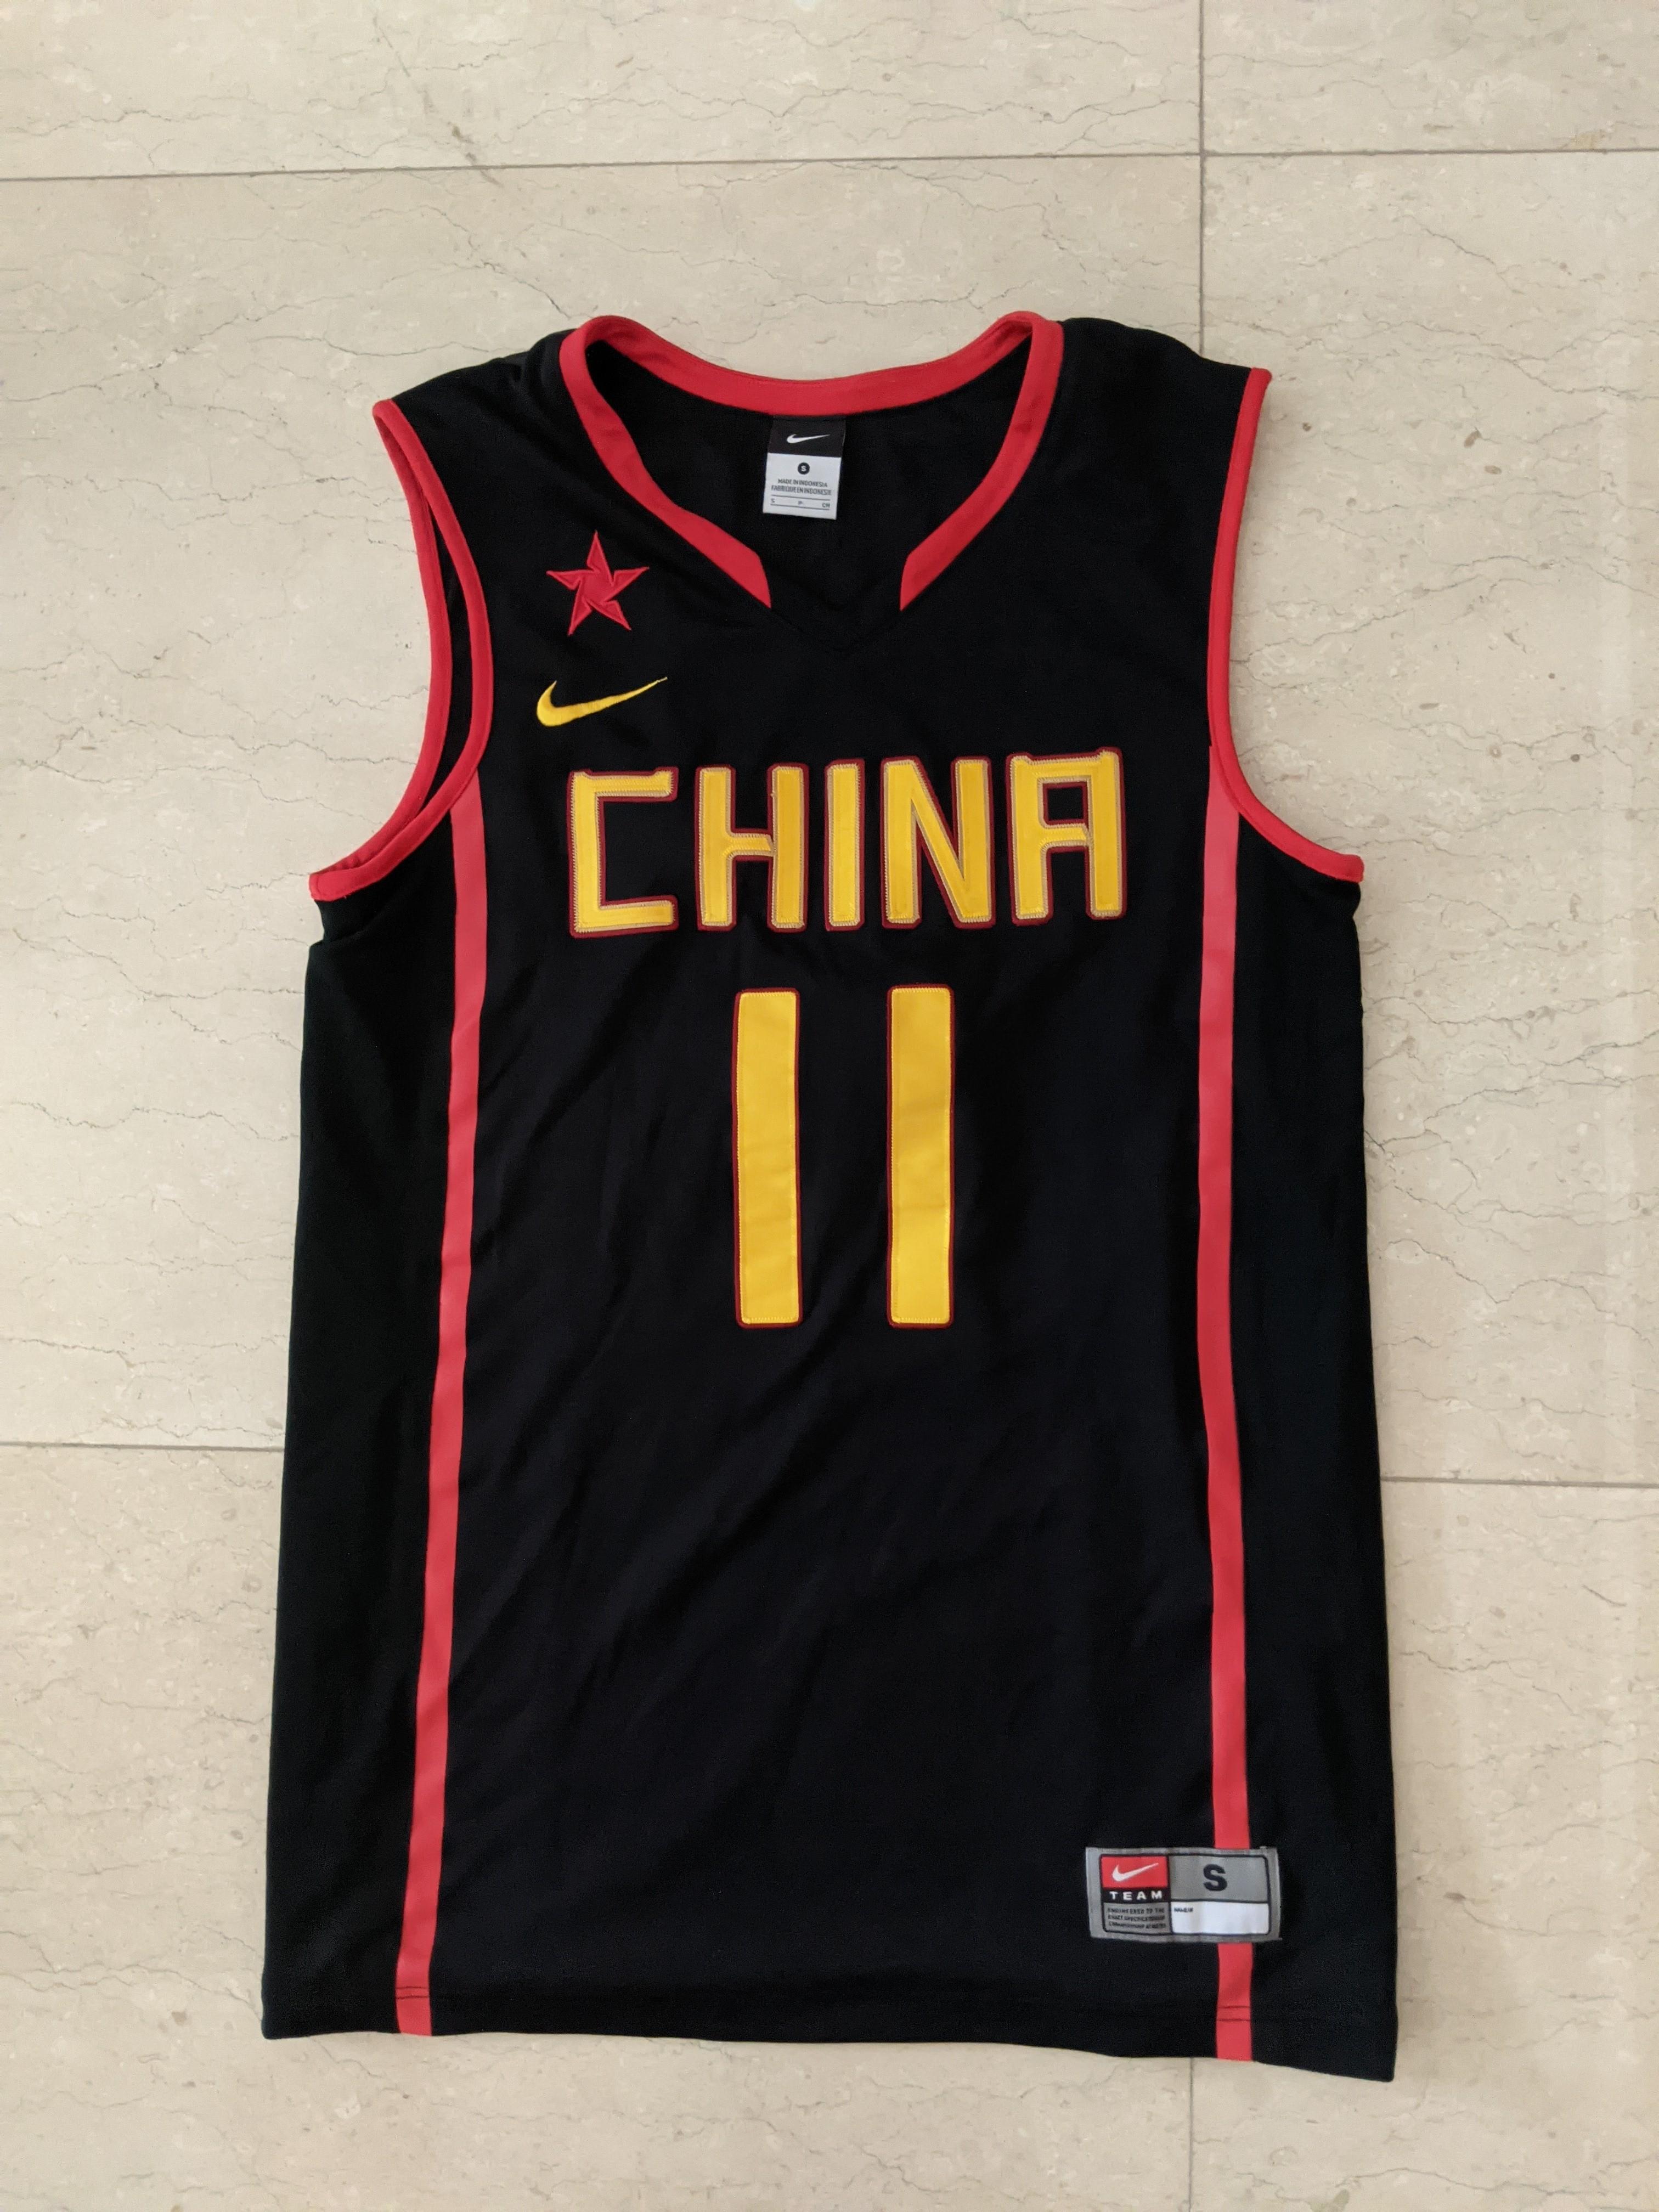 Nike Basketball Jersey China 11 Yi Jianlian Small, Men's Fashion,  Activewear on Carousell